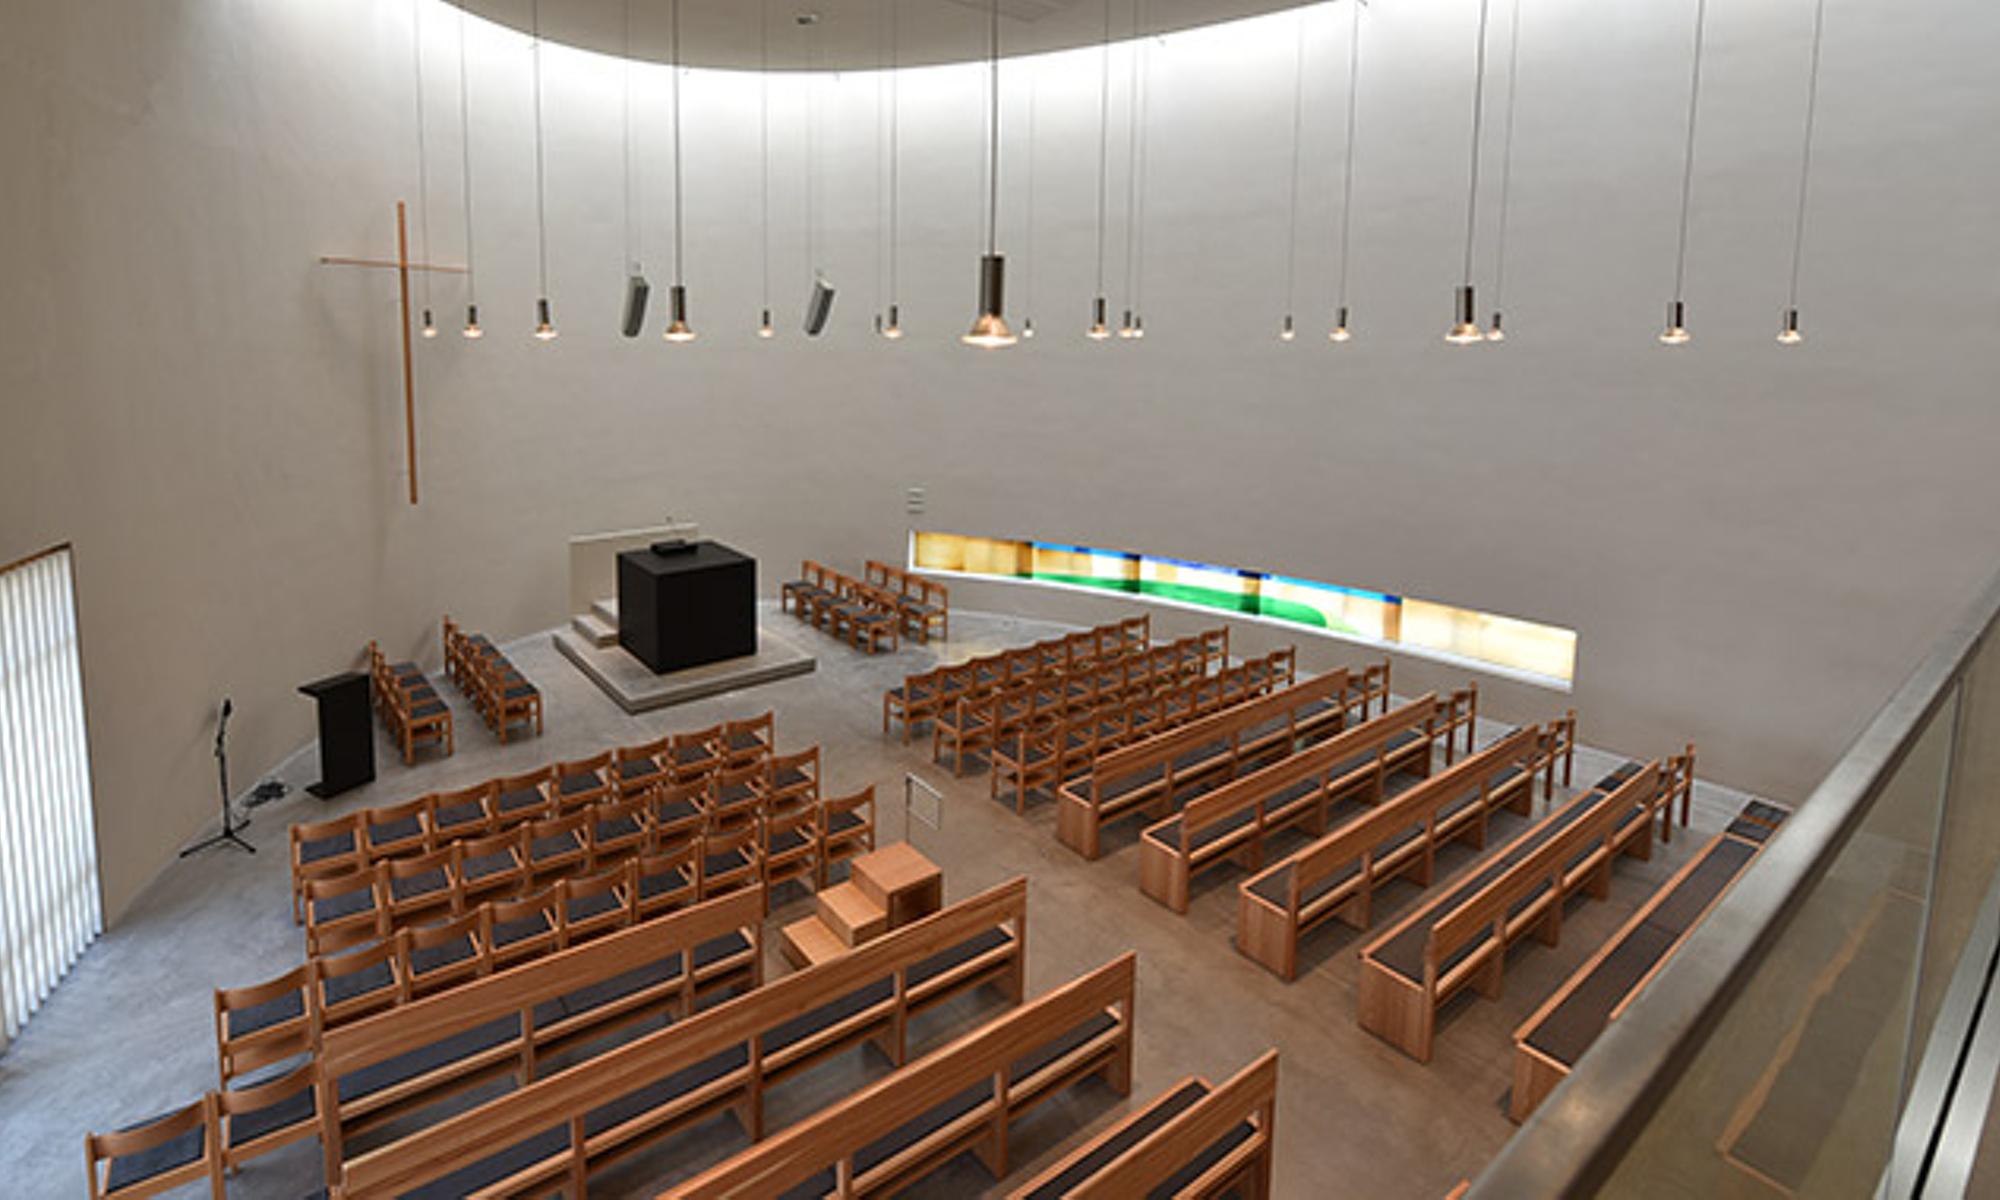 Das Kirchengebäude in Stuttgart-Bad Cannstatt